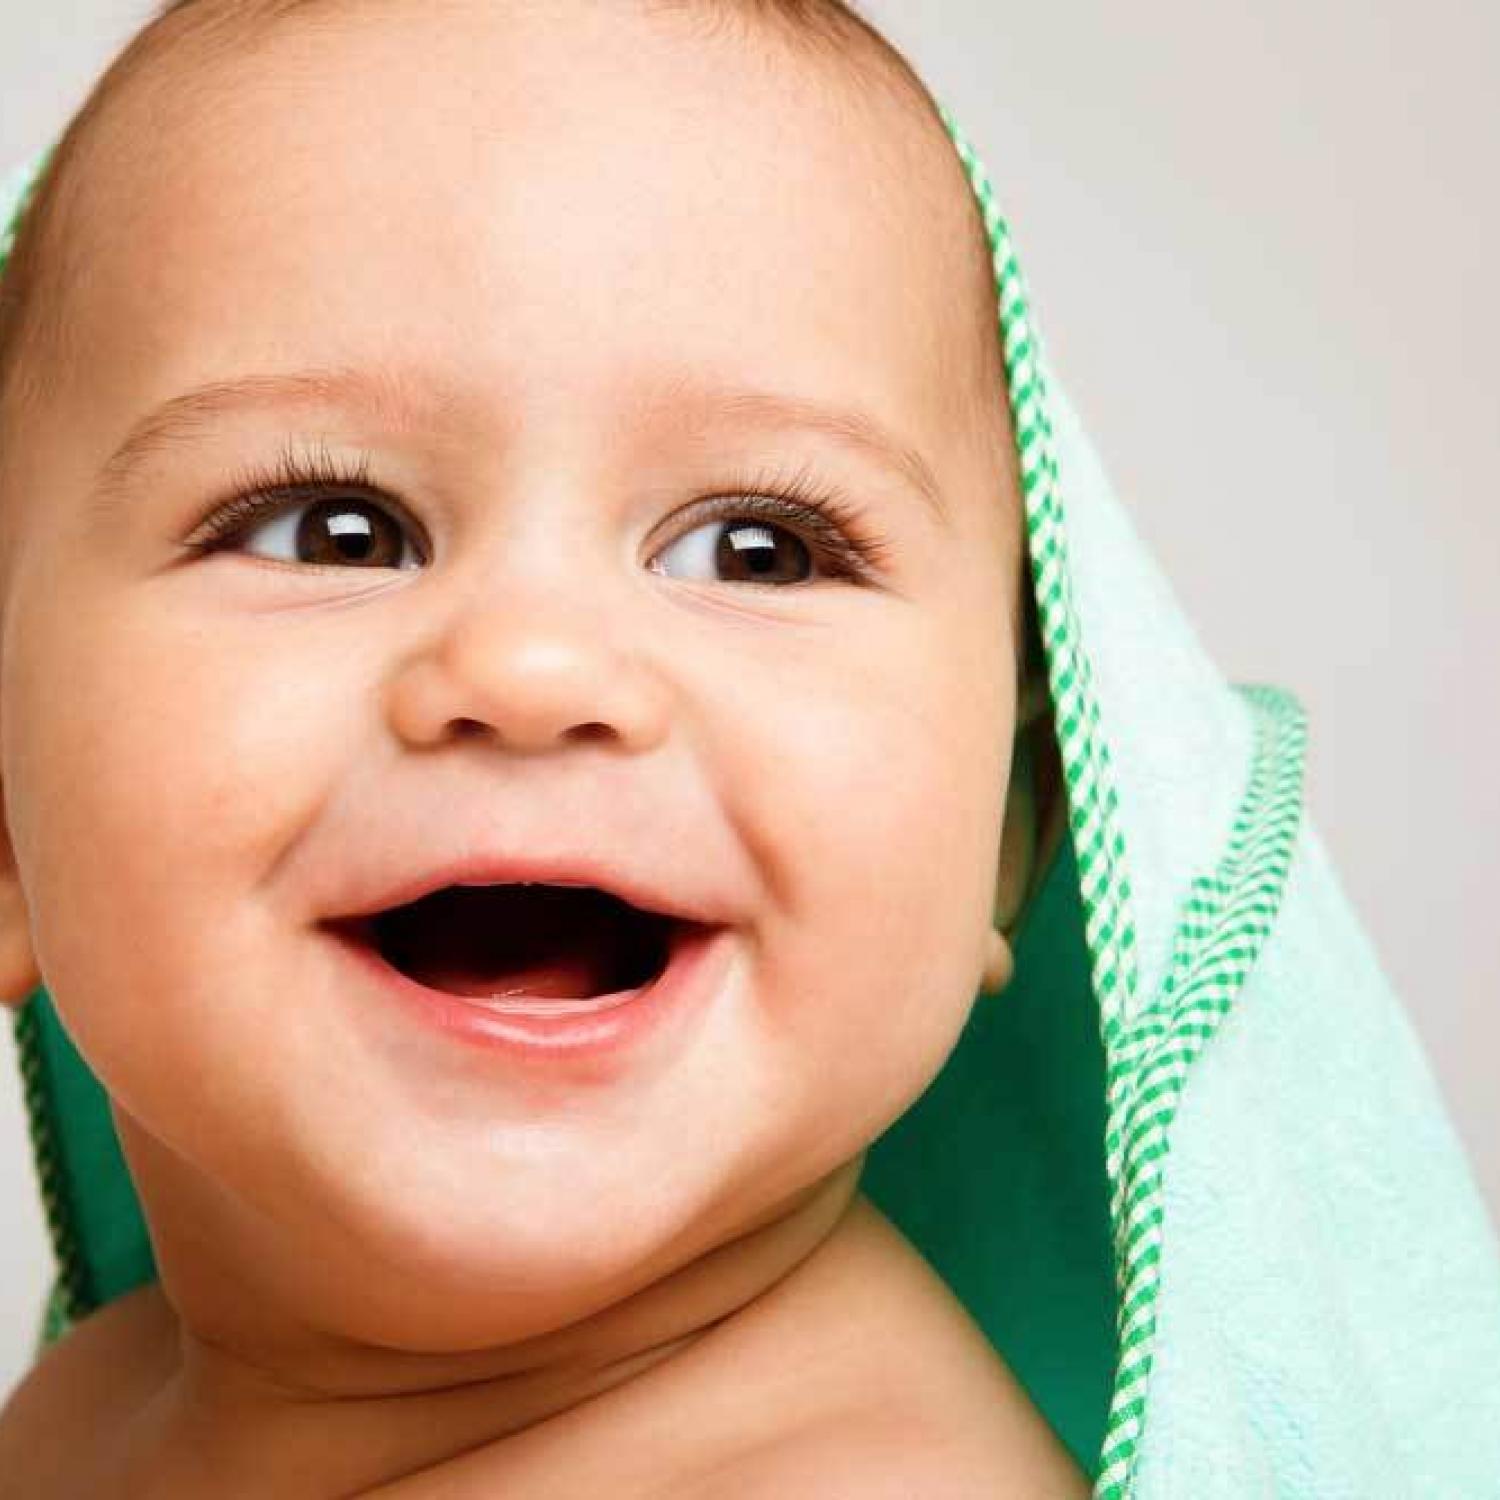 В определенный момент беззубая улыбка малыша перестает умилять родителей